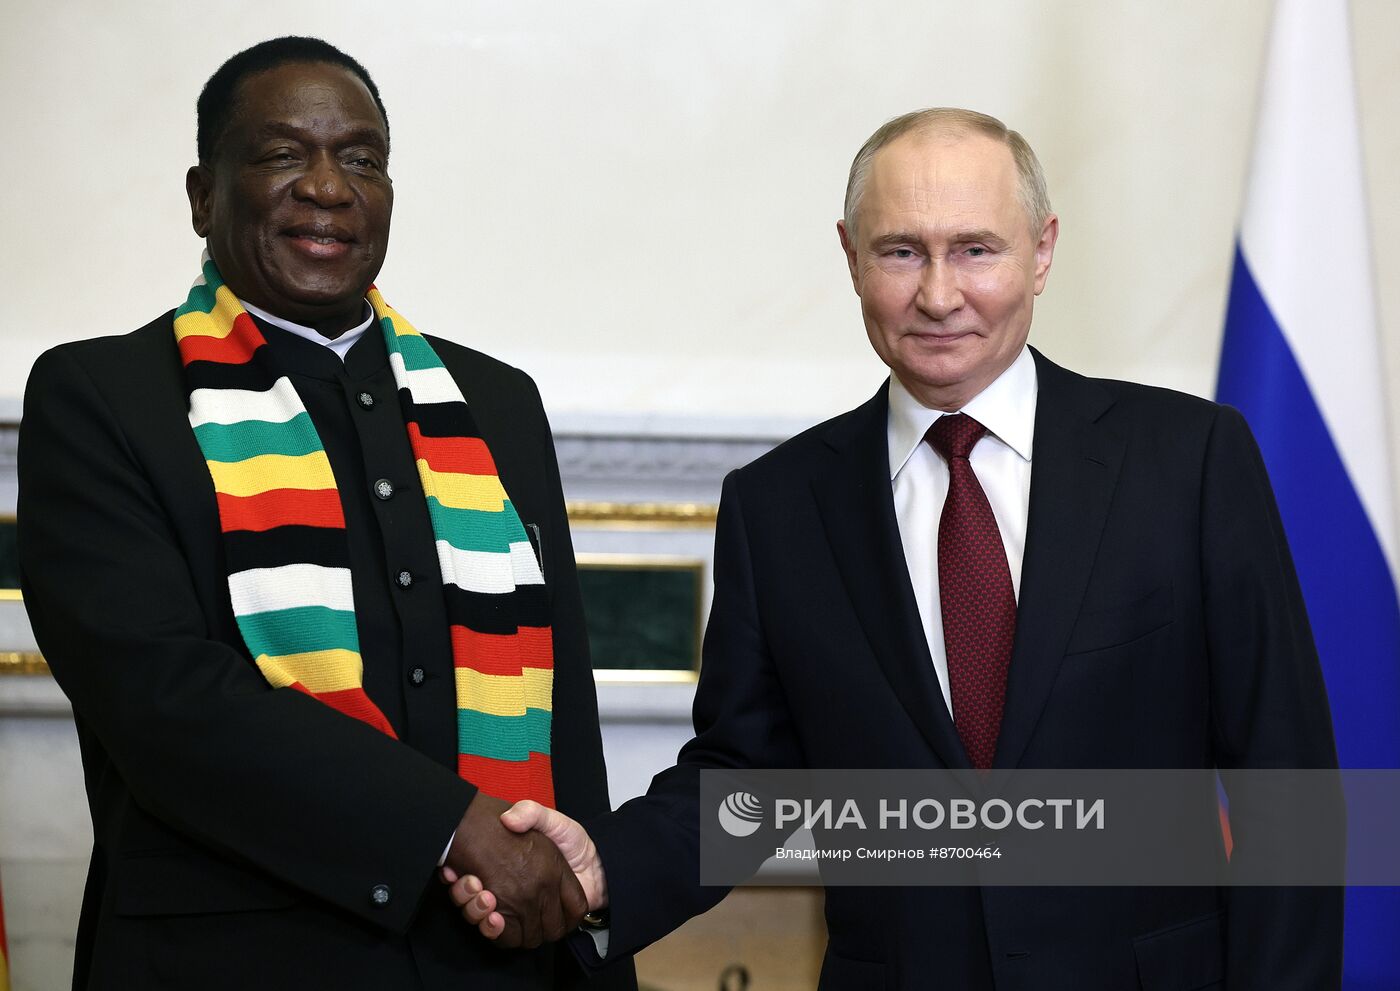 Президент Владимир Путин провел переговоры с президентом Республики Зимбабве Эммерсоном Мнангагвой